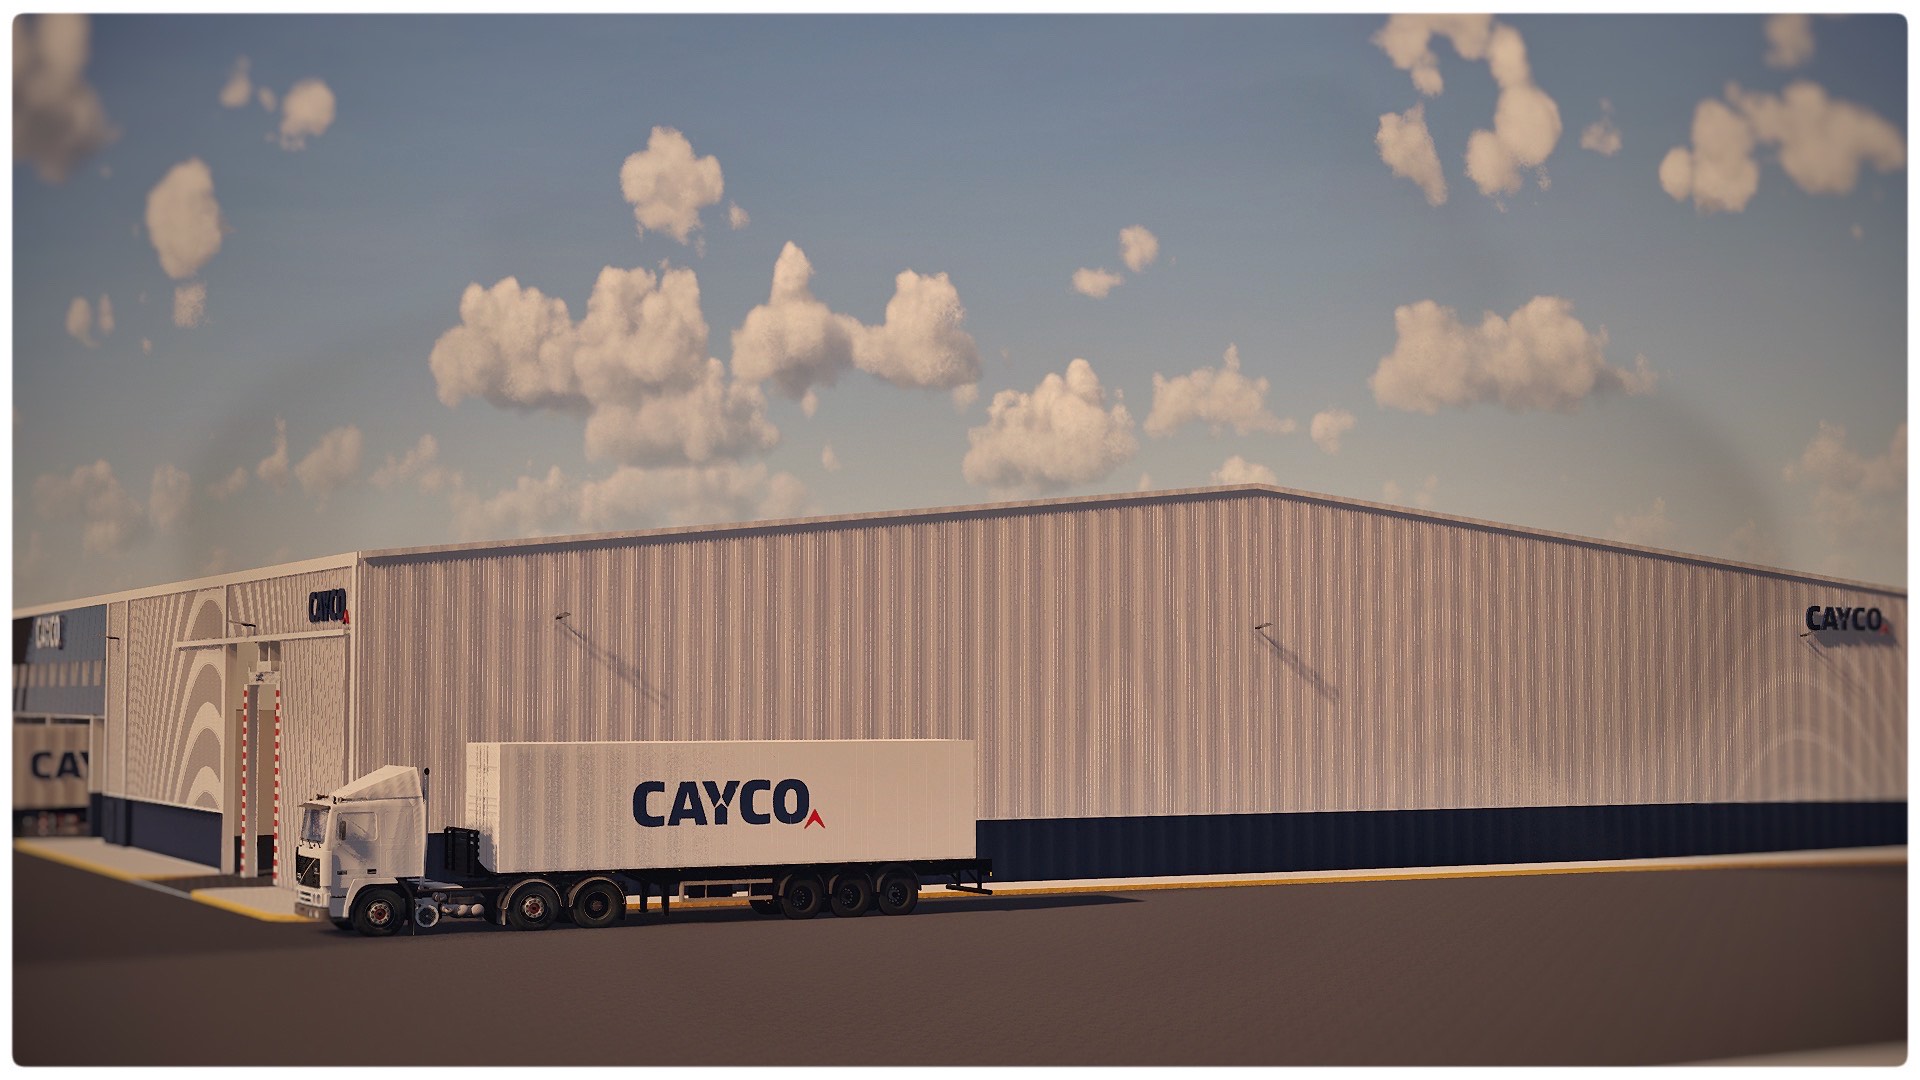 instalaciones-CAYCO-by Beusual